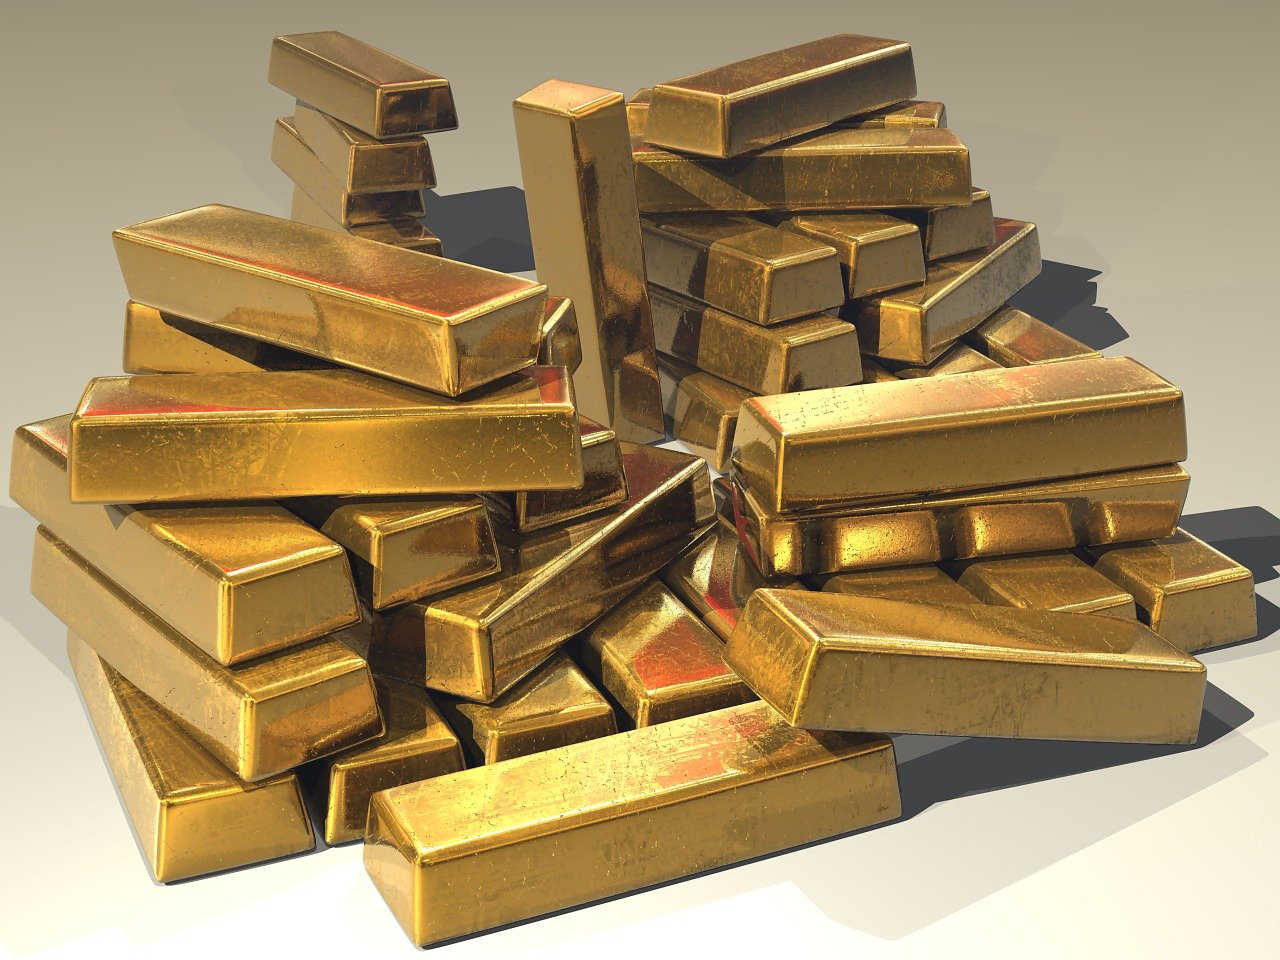 Investir dans l'or : pourquoi et comment ?